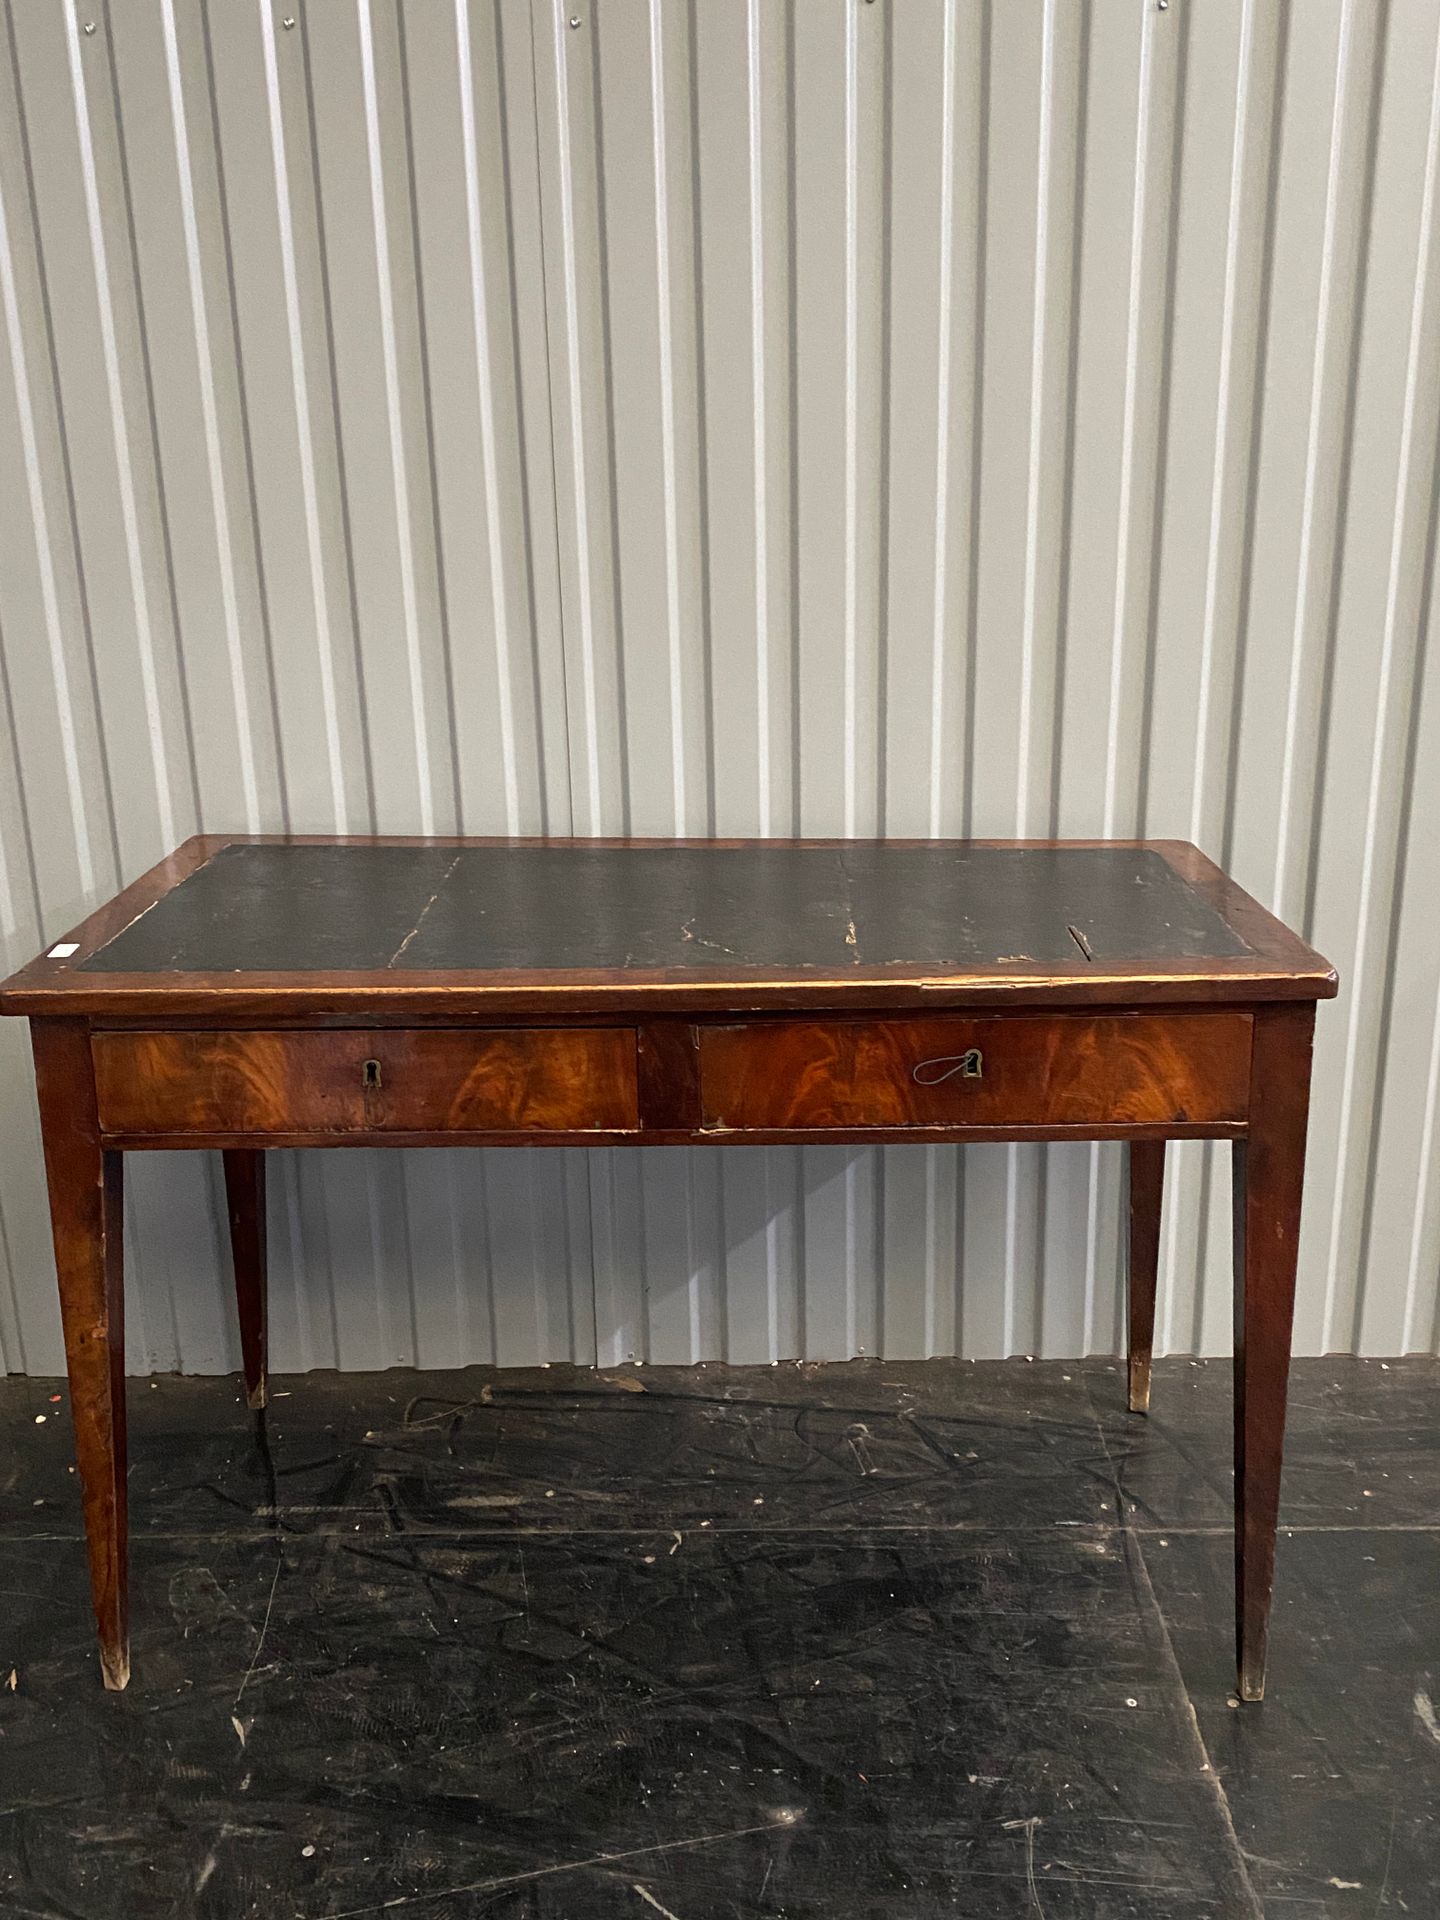 Null 桃花心木和桃花心木饰面的平面书桌，它前面有两个抽屉，皮革桌面，锥形腿。

19世纪初

单板开裂

高：73 - 长：113 - 宽：56厘米